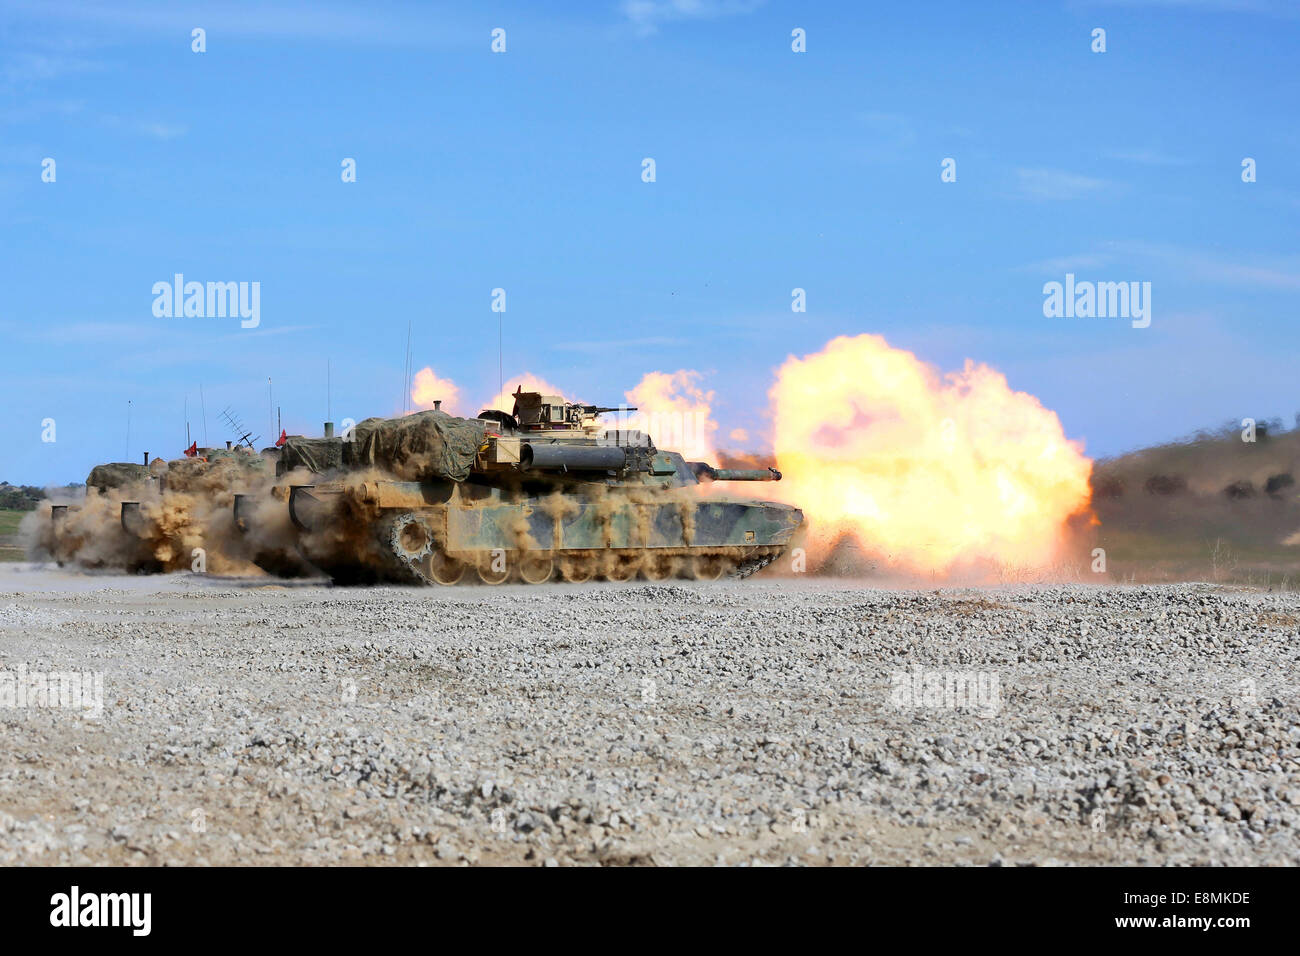 Marzo 20, 2014 - El fuego de la Infantería de Marina de EE.UU. 120mm smoothbore cañón de cuatro M1A1 Abrams de tanques durante un ejercicio de entrenamiento con fuego vivo en Foto de stock